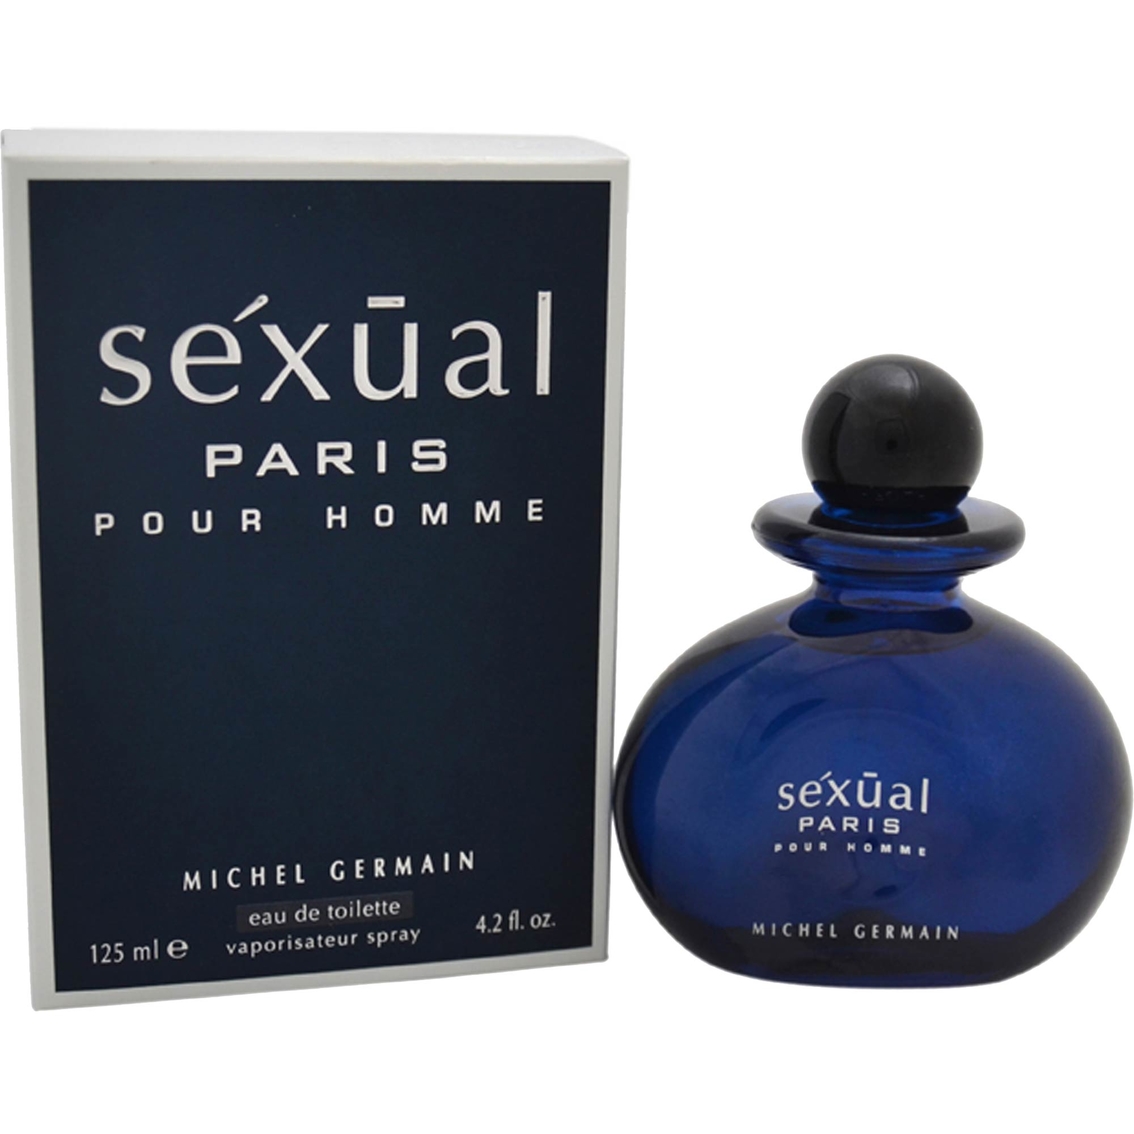 Michel Germain Sexual Paris Eau De Toilette 4.2 oz. Spray - Image 2 of 2